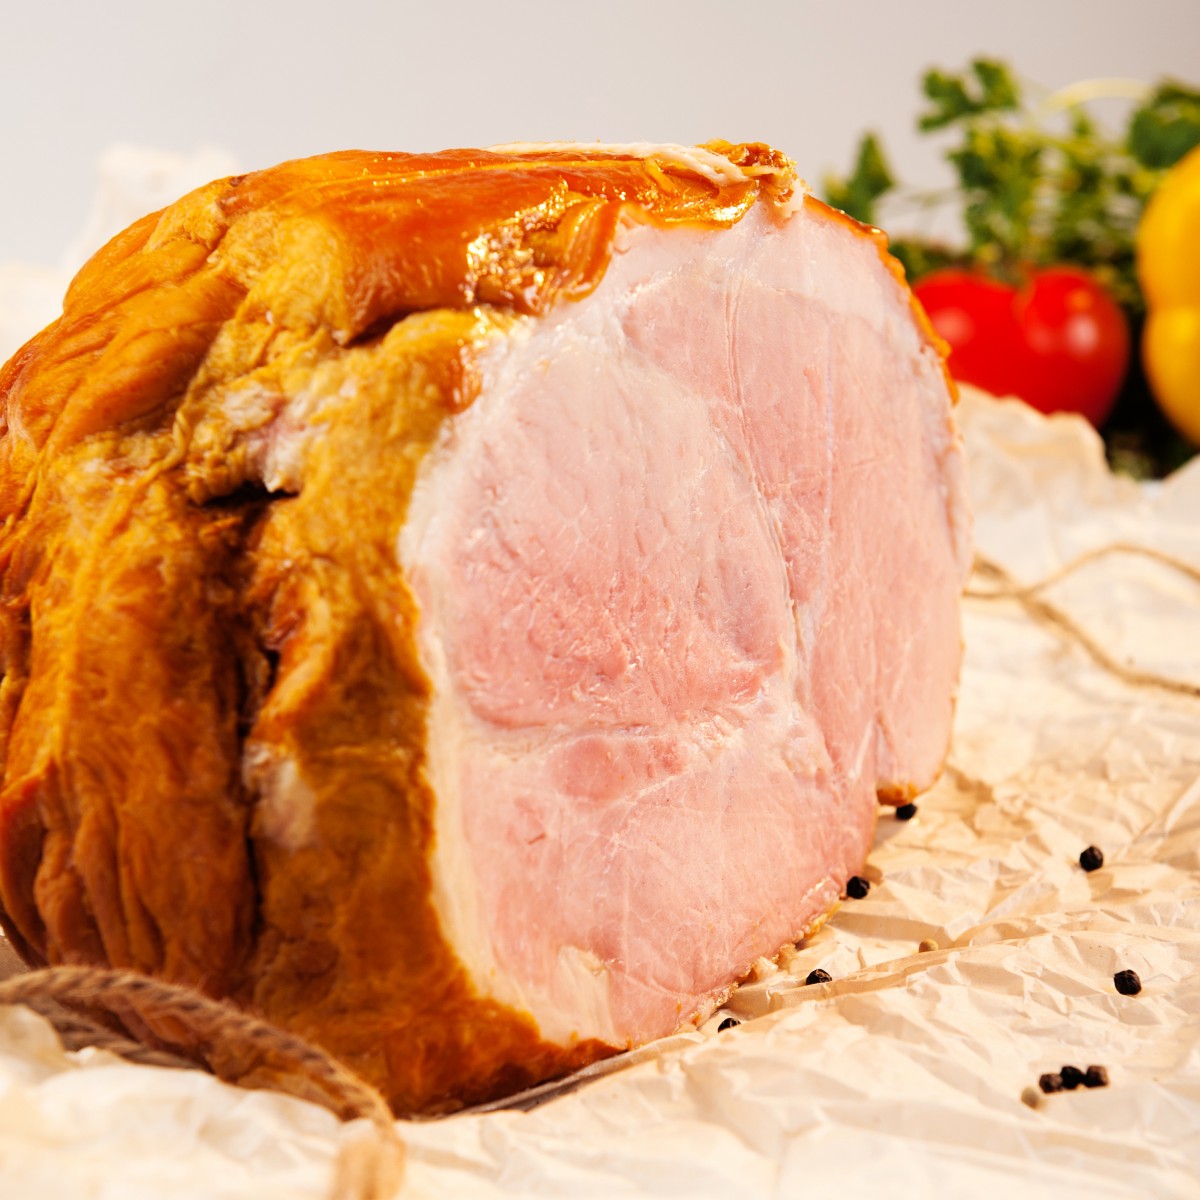 Окорок свиной в фольге запеченный в духовке рецепт с фото в